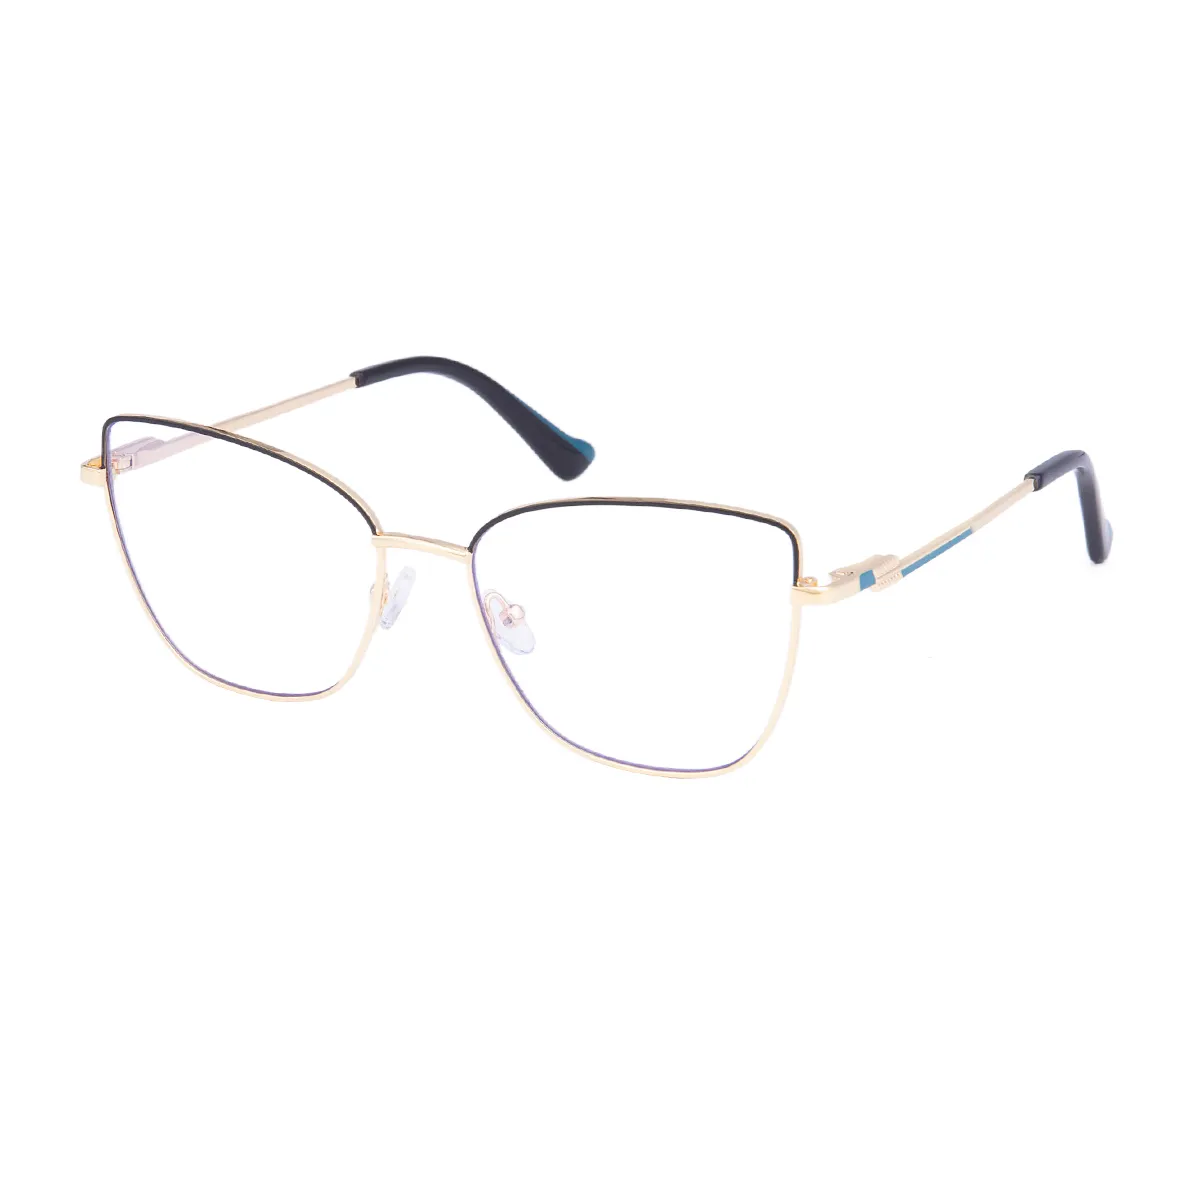 Eudora - Cat-eye Gold/Black Glasses for Women - EFE